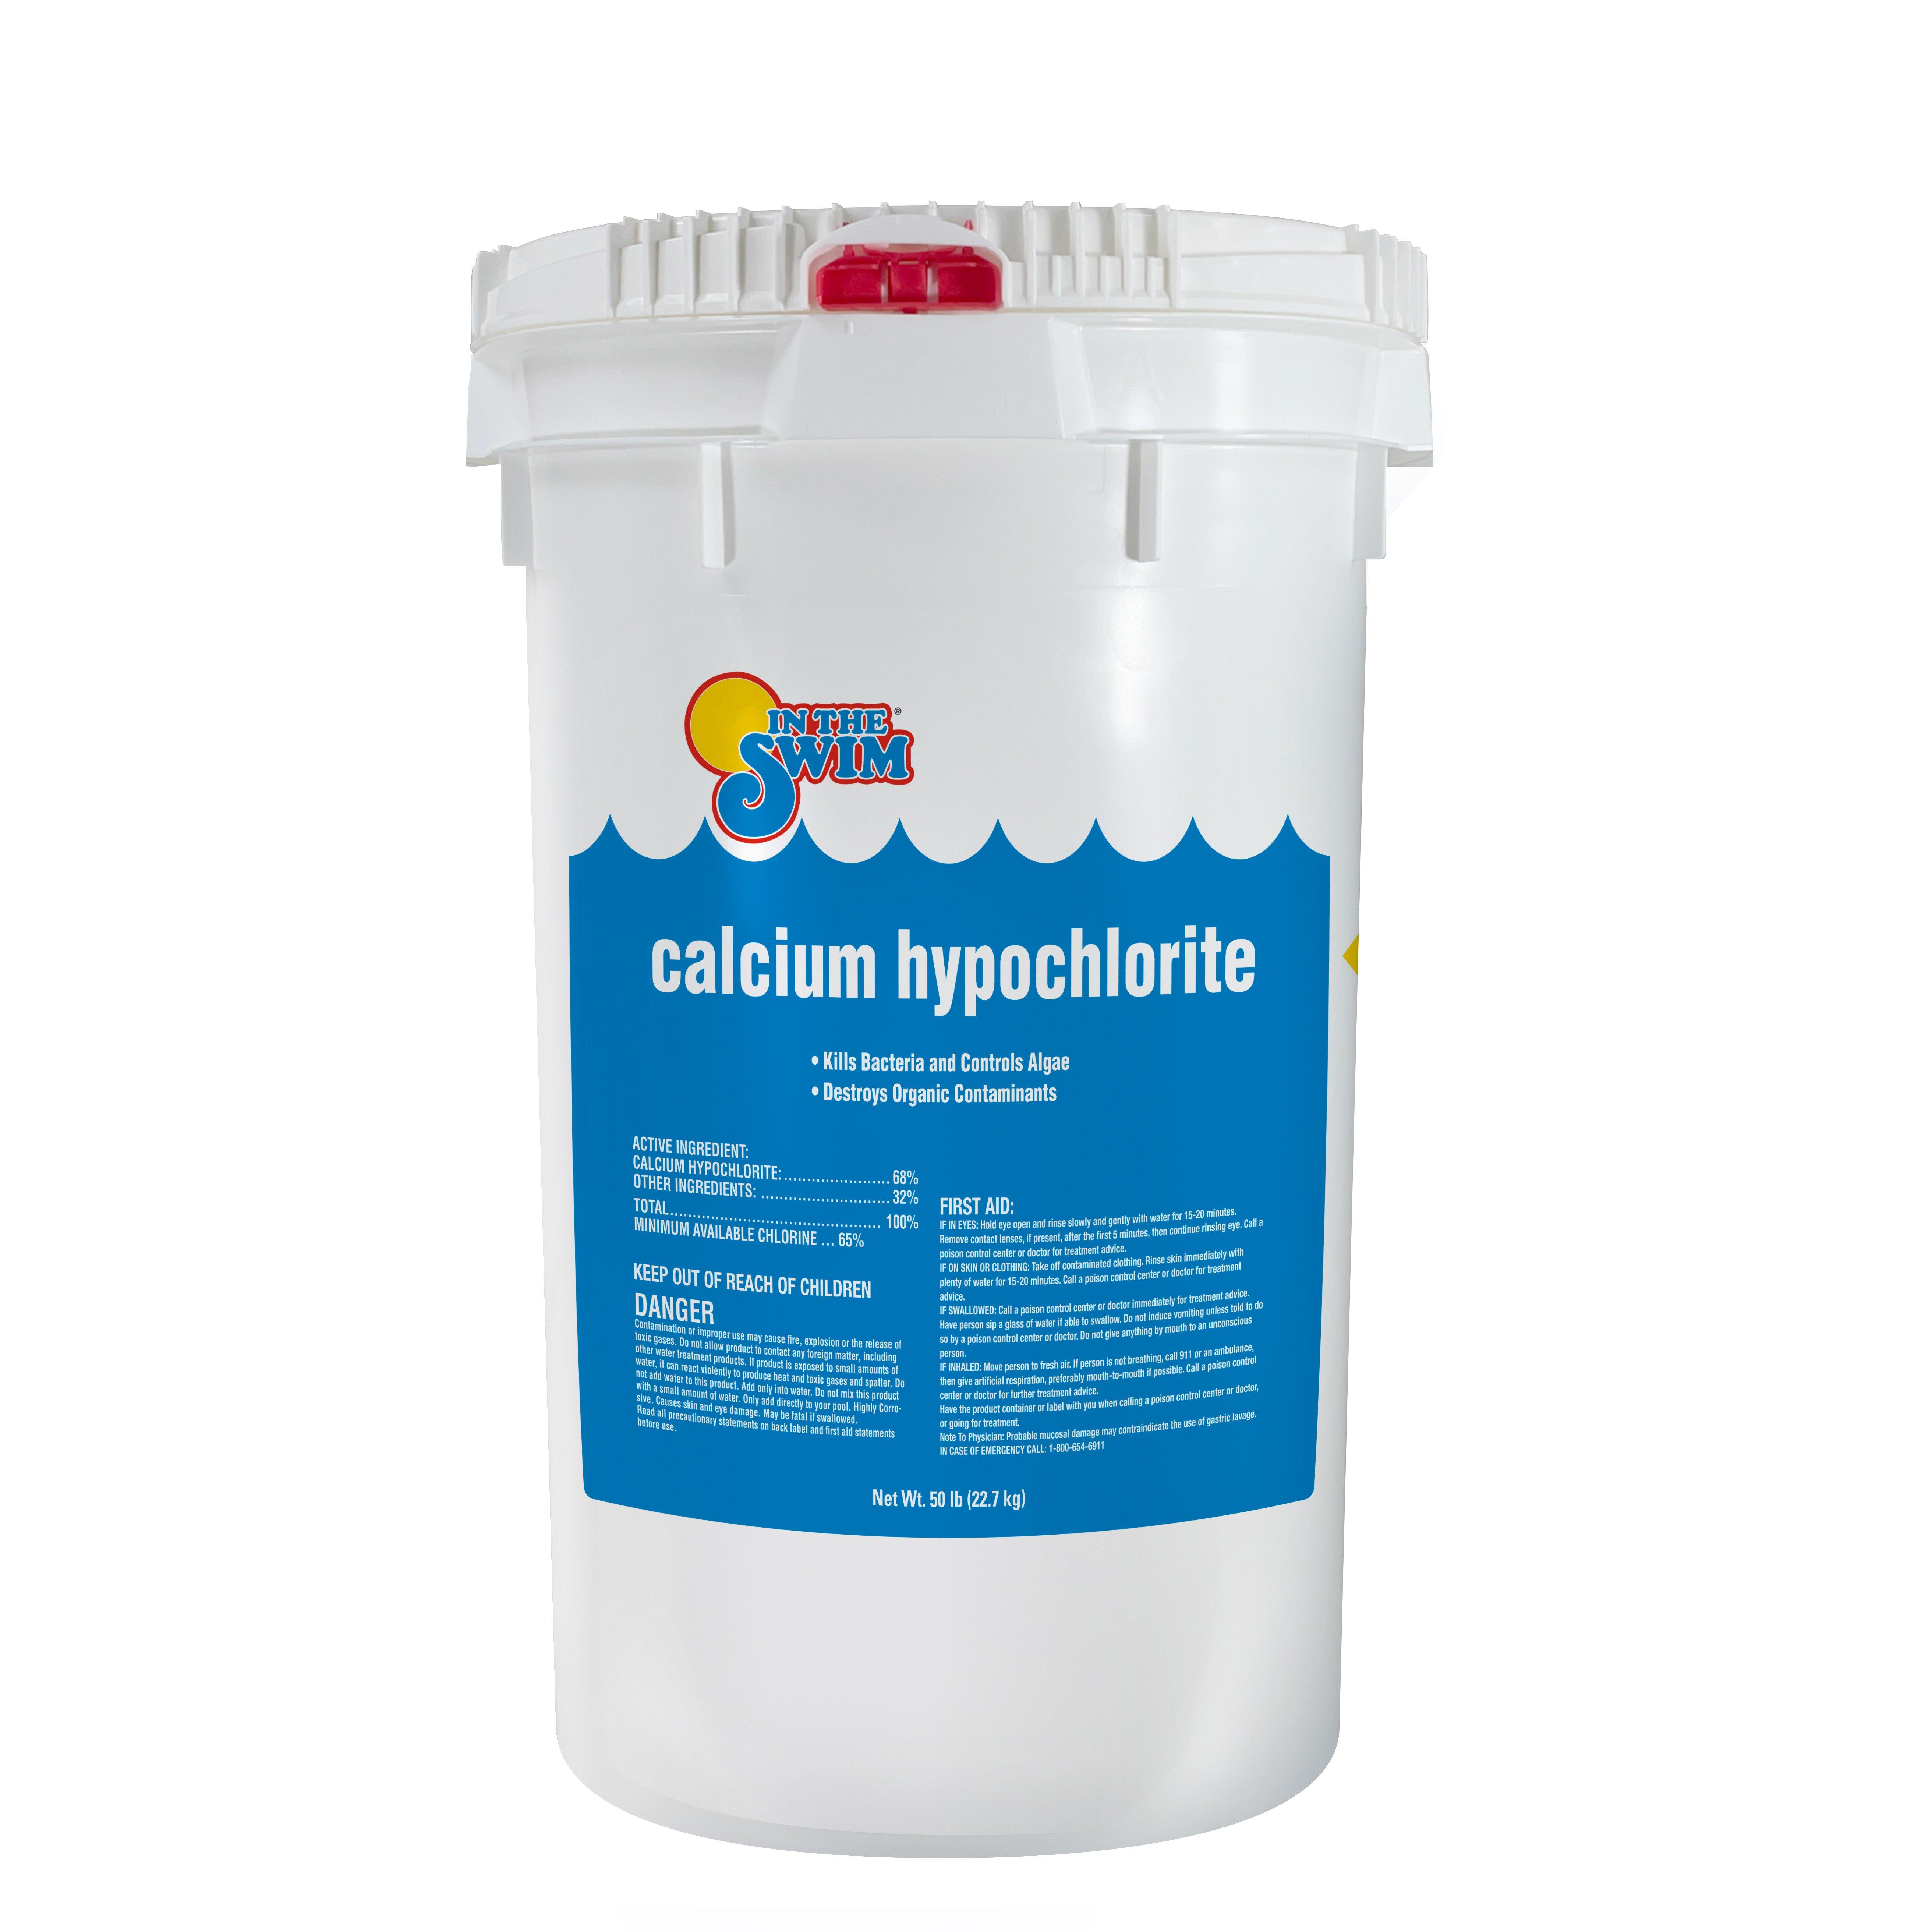 In The Swim Calcium Hypochlorite